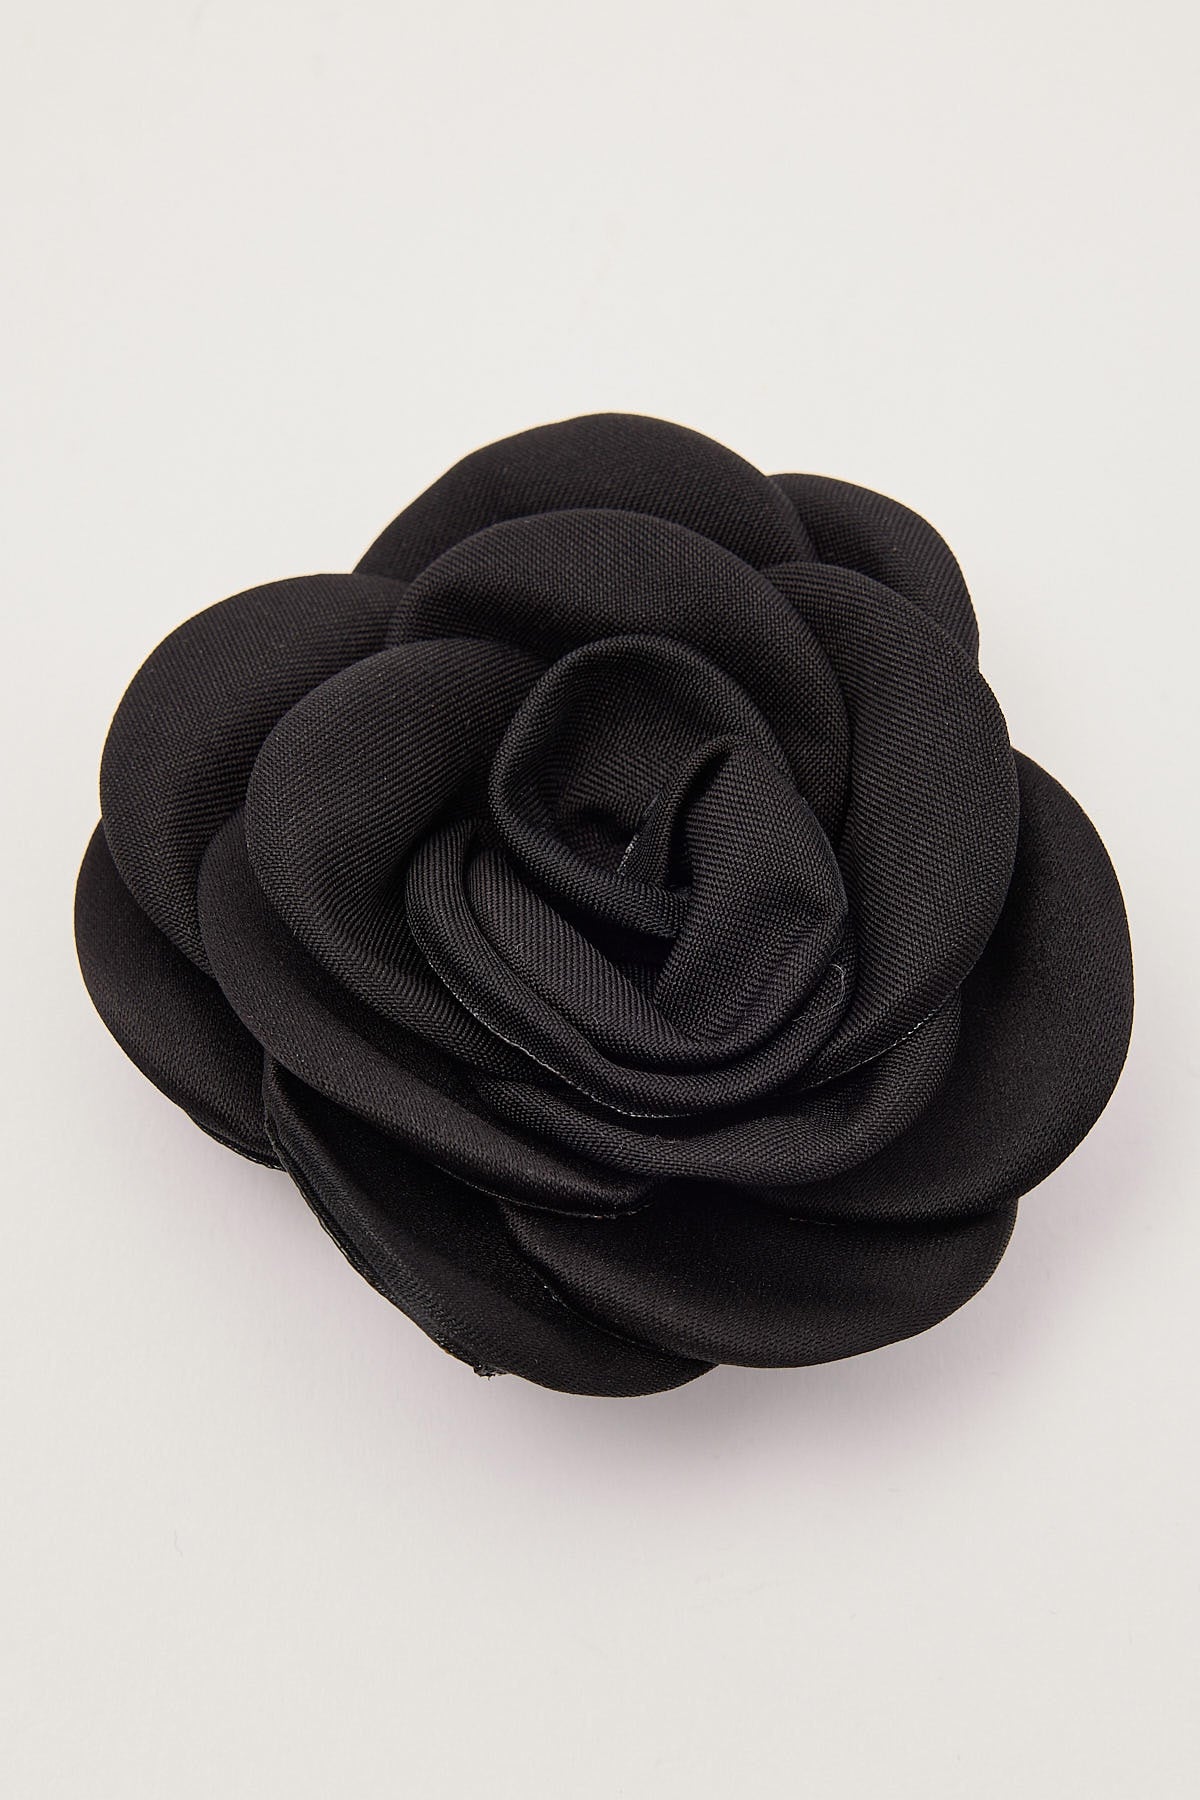 Token Satin Rose Multi Use Clip Black